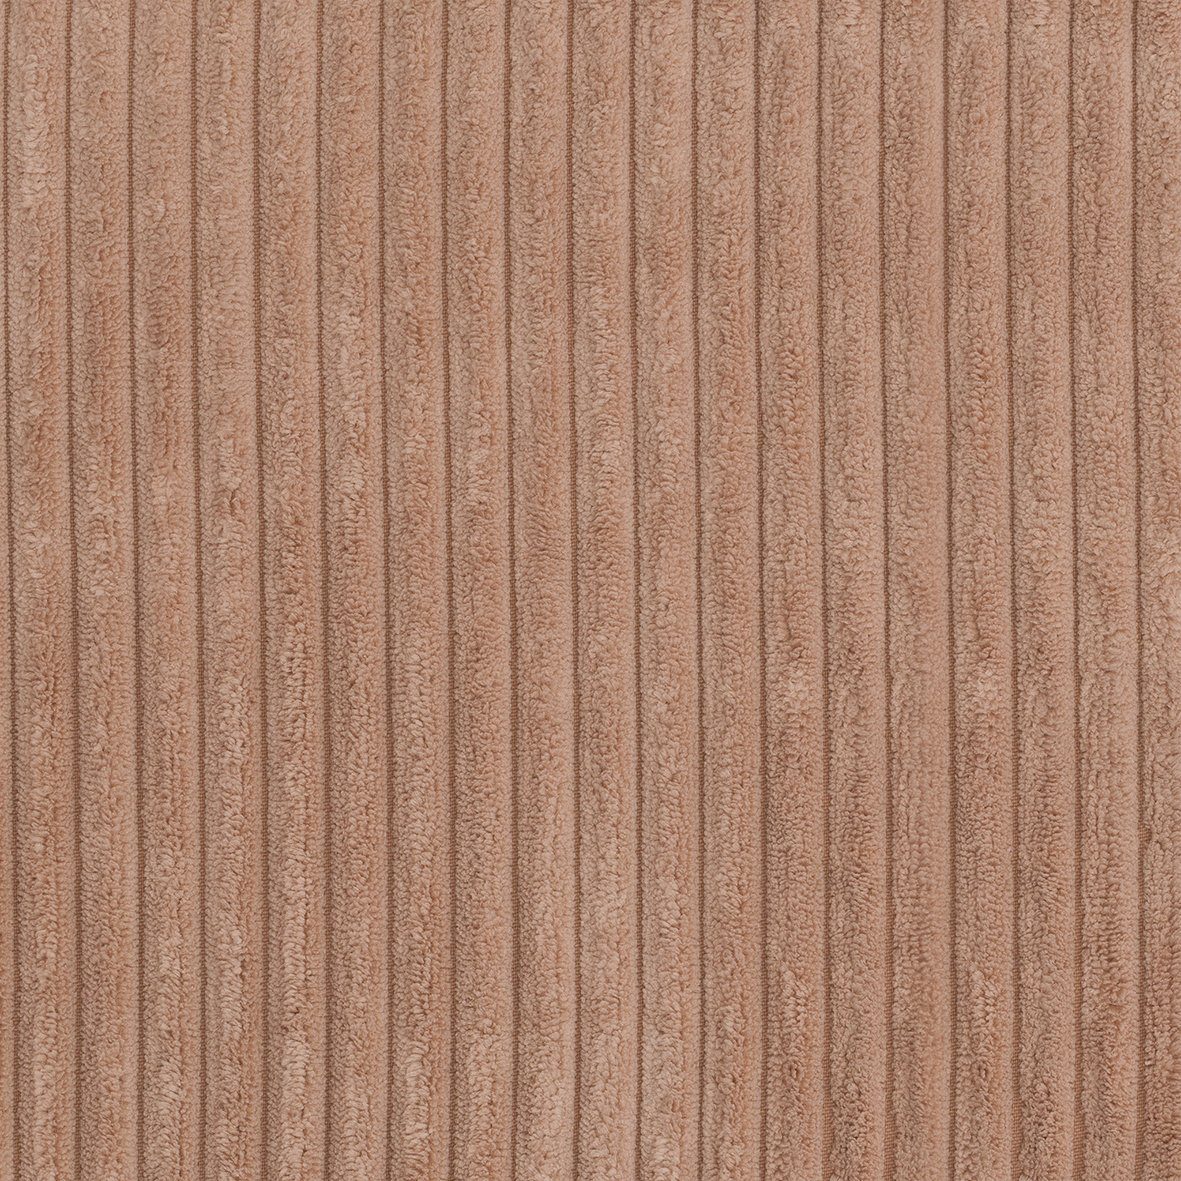 Ecke Modul - collection rose oder Abschluss 700010, einsetzbar Sofa-Eckelement als DOMO